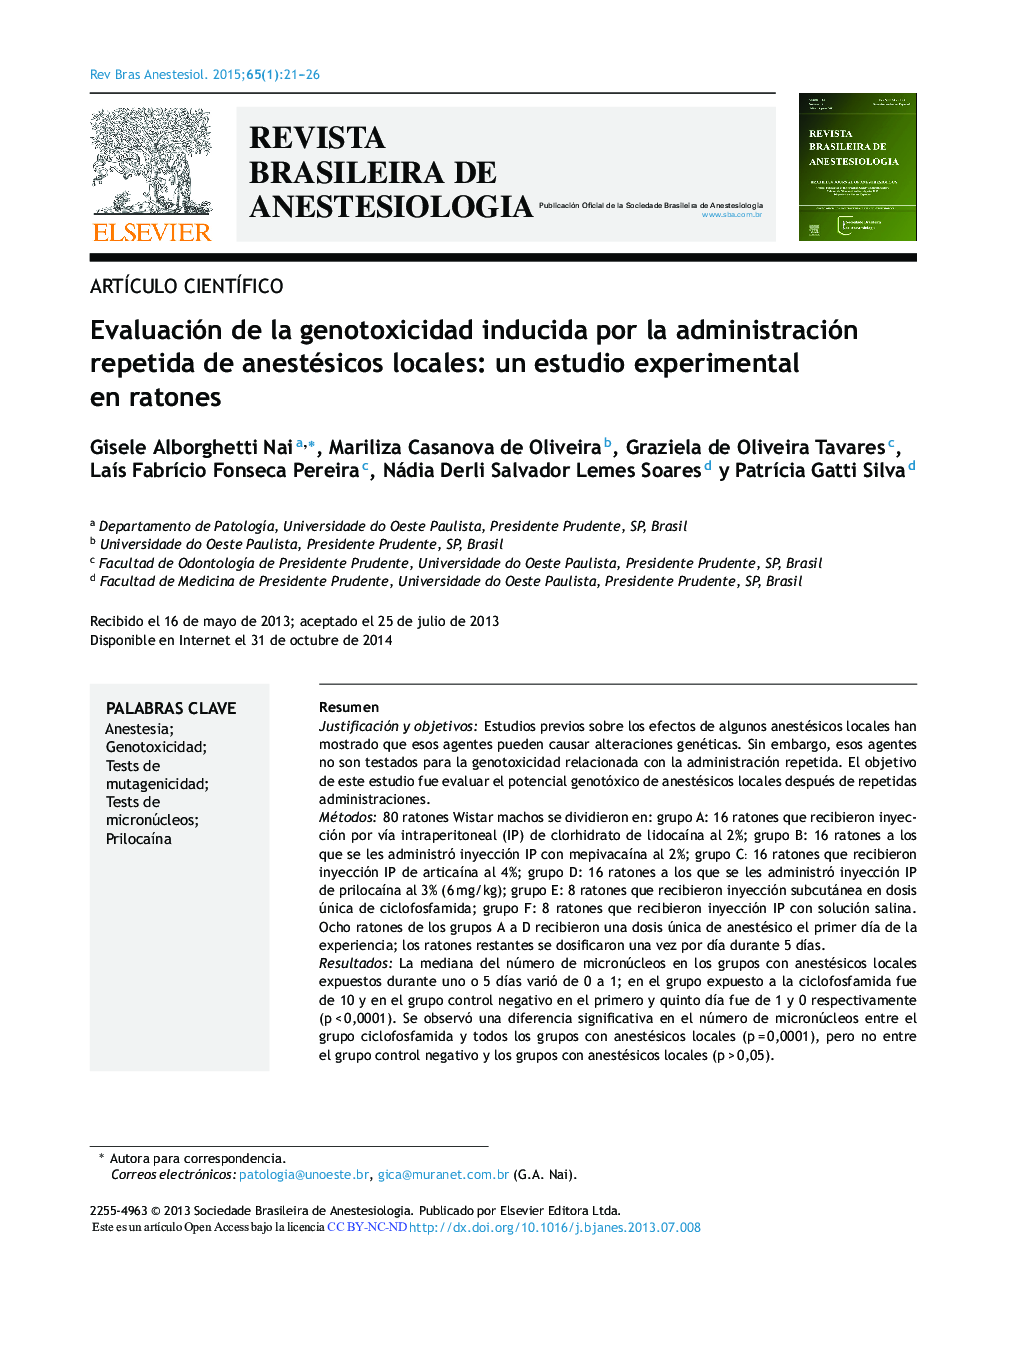 Evaluación de la genotoxicidad inducida por la administración repetida de anestésicos locales: un estudio experimental en ratones